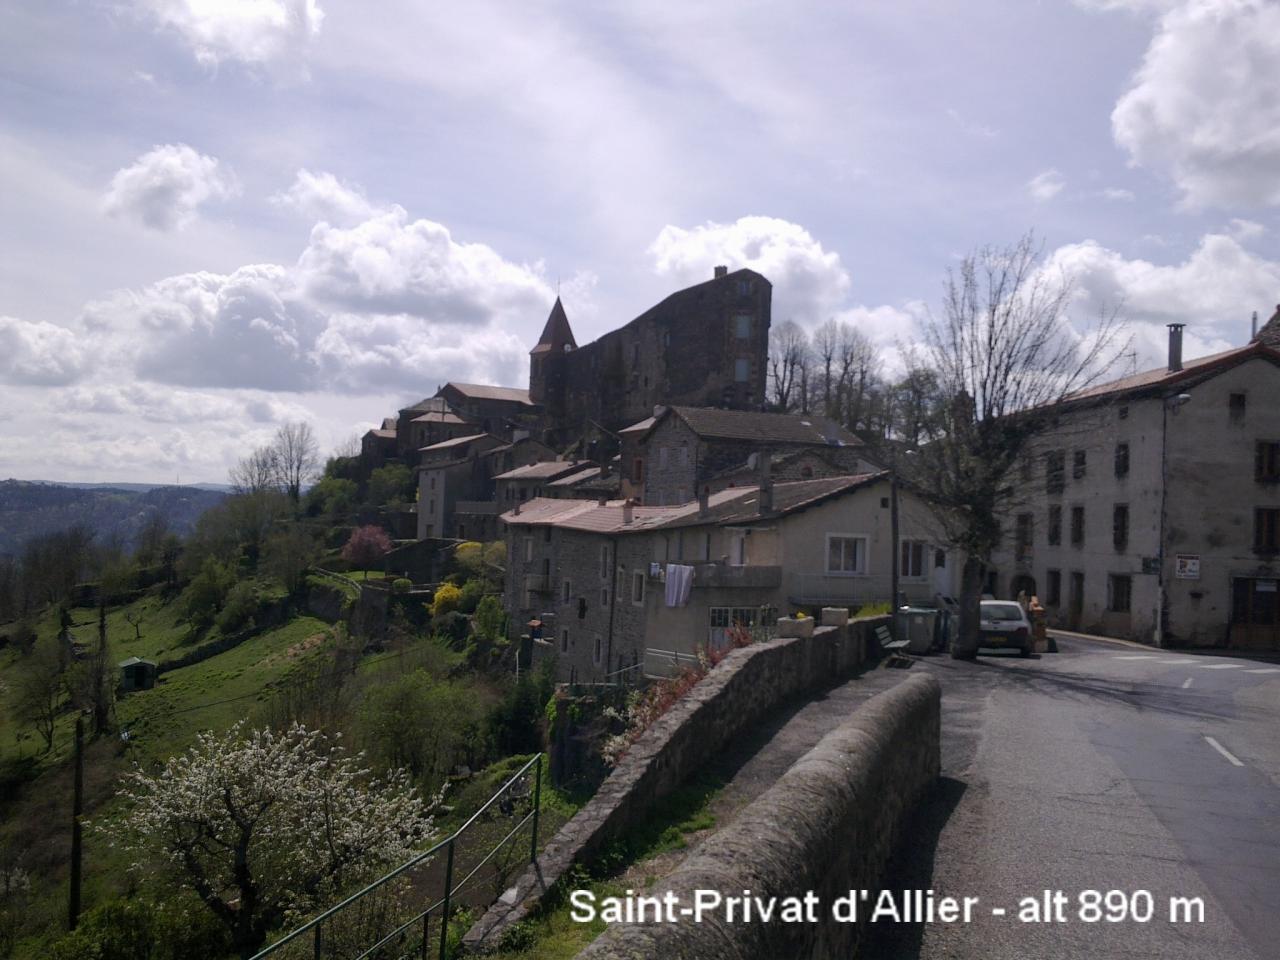 Saint-Privat d'Allier